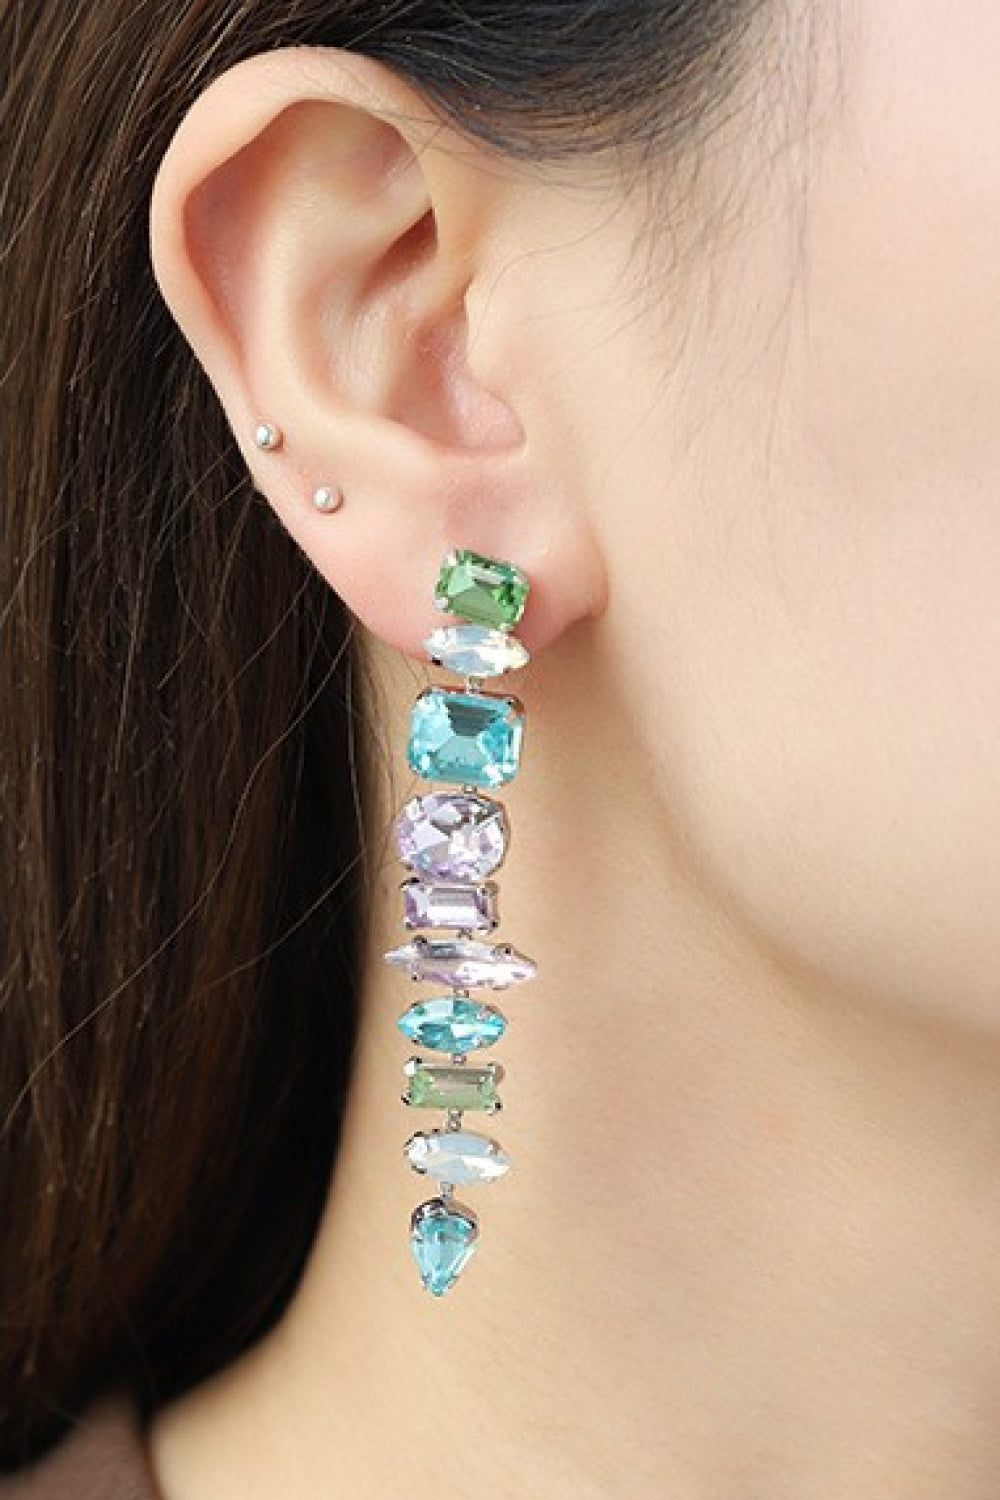 Multicolored Glass Stone Dangle Earrings - Earrings - FITGGINS